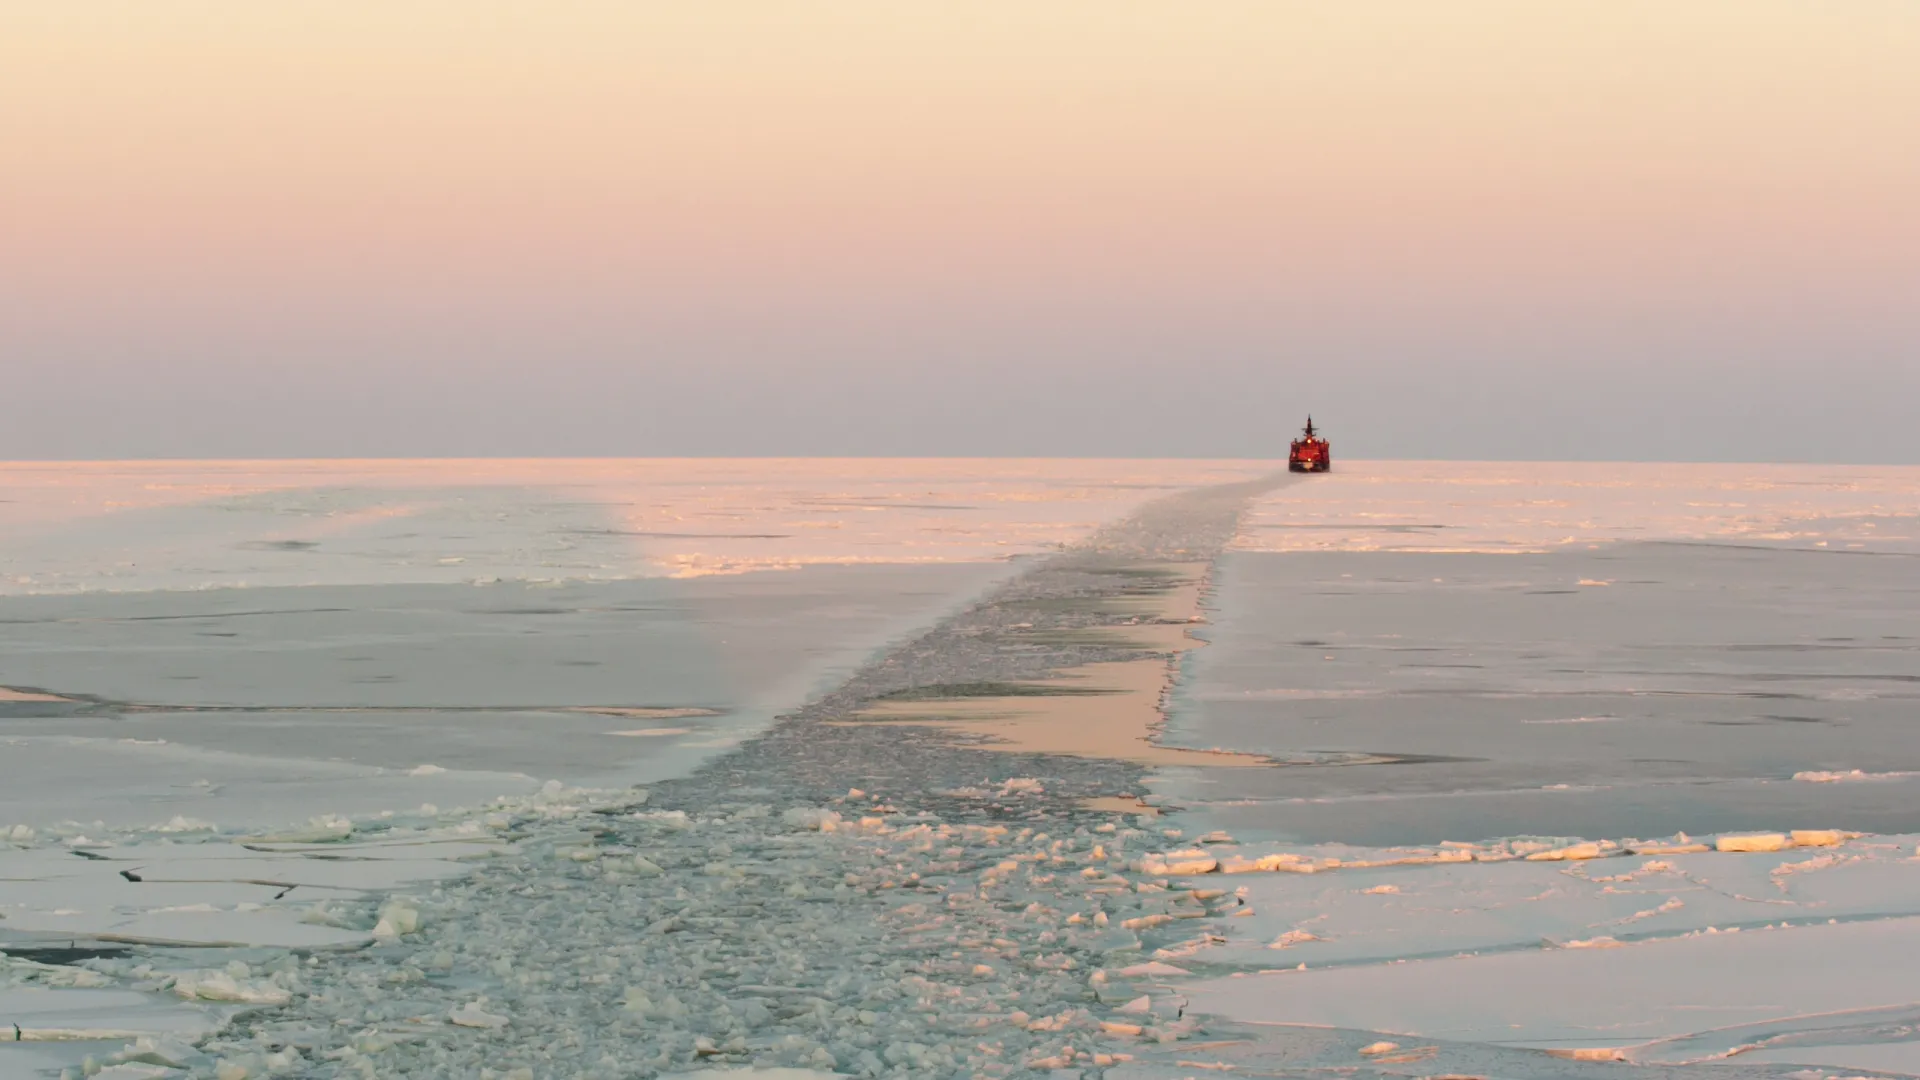 Проложенный ледоколом путь. Фото: Koptyaev Igor / Shutterstock / Fotodom